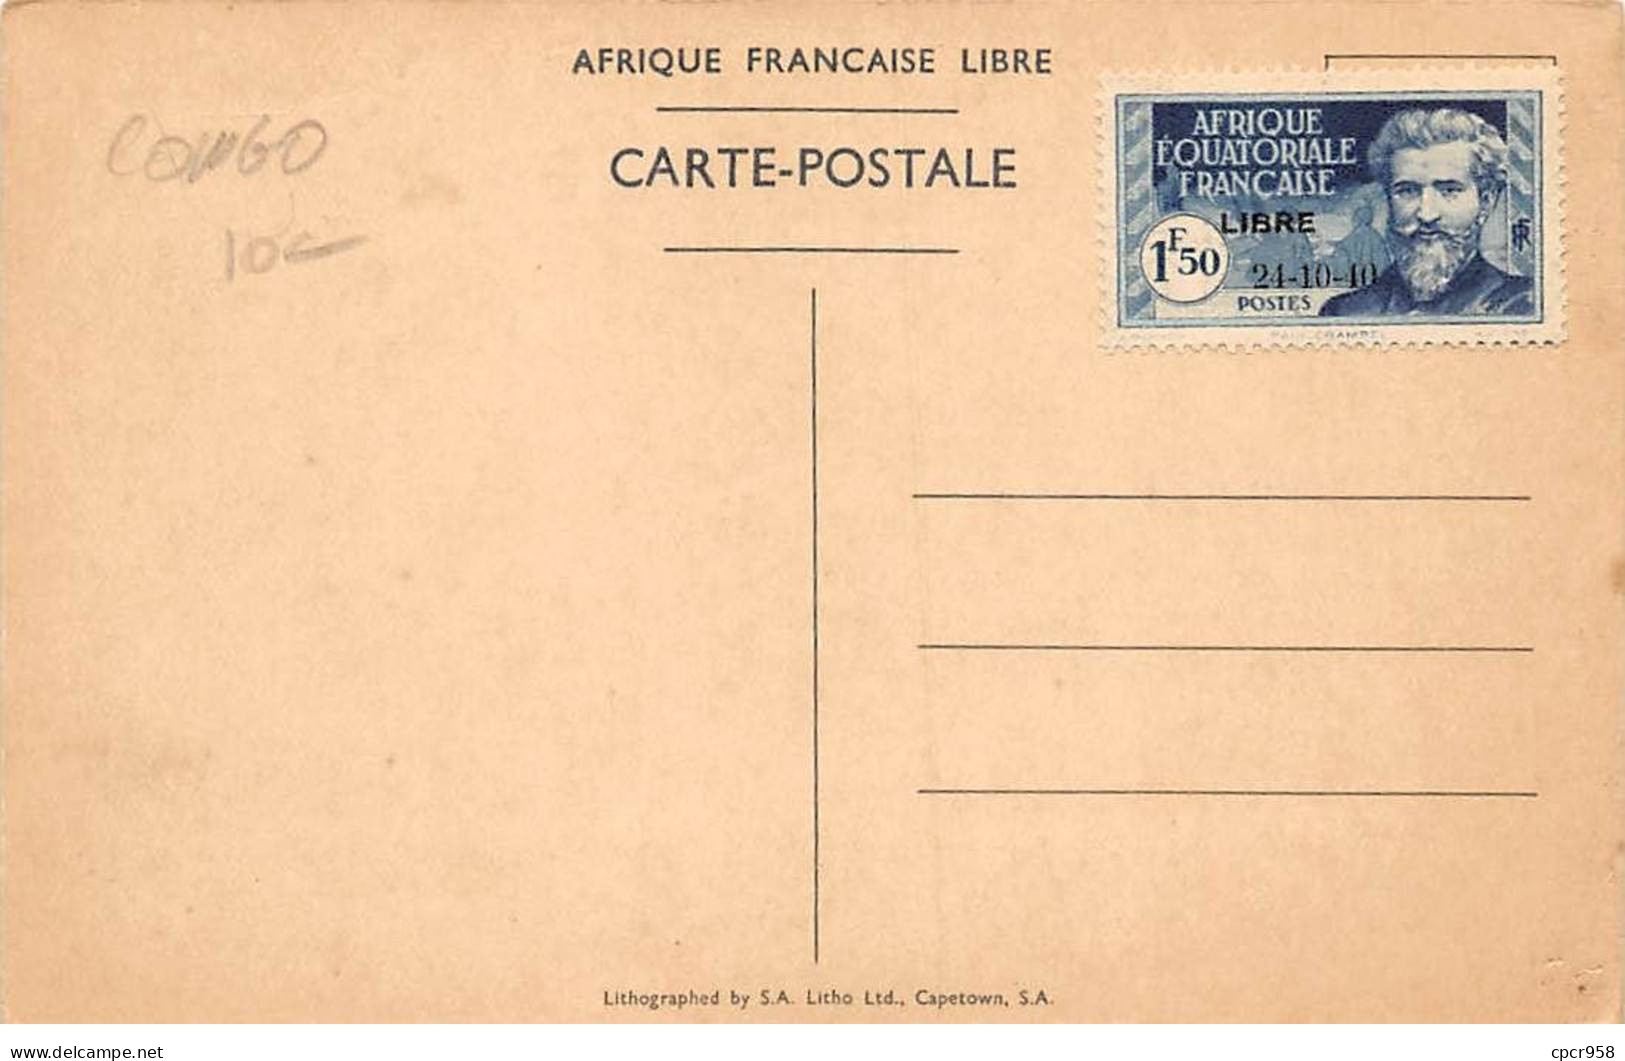 CONGO - SAN51201 - Brazzaville - Arrivée Du Général De Gaulle Dans La Capital De La France Libre - 24 Octobre 1940 - Brazzaville